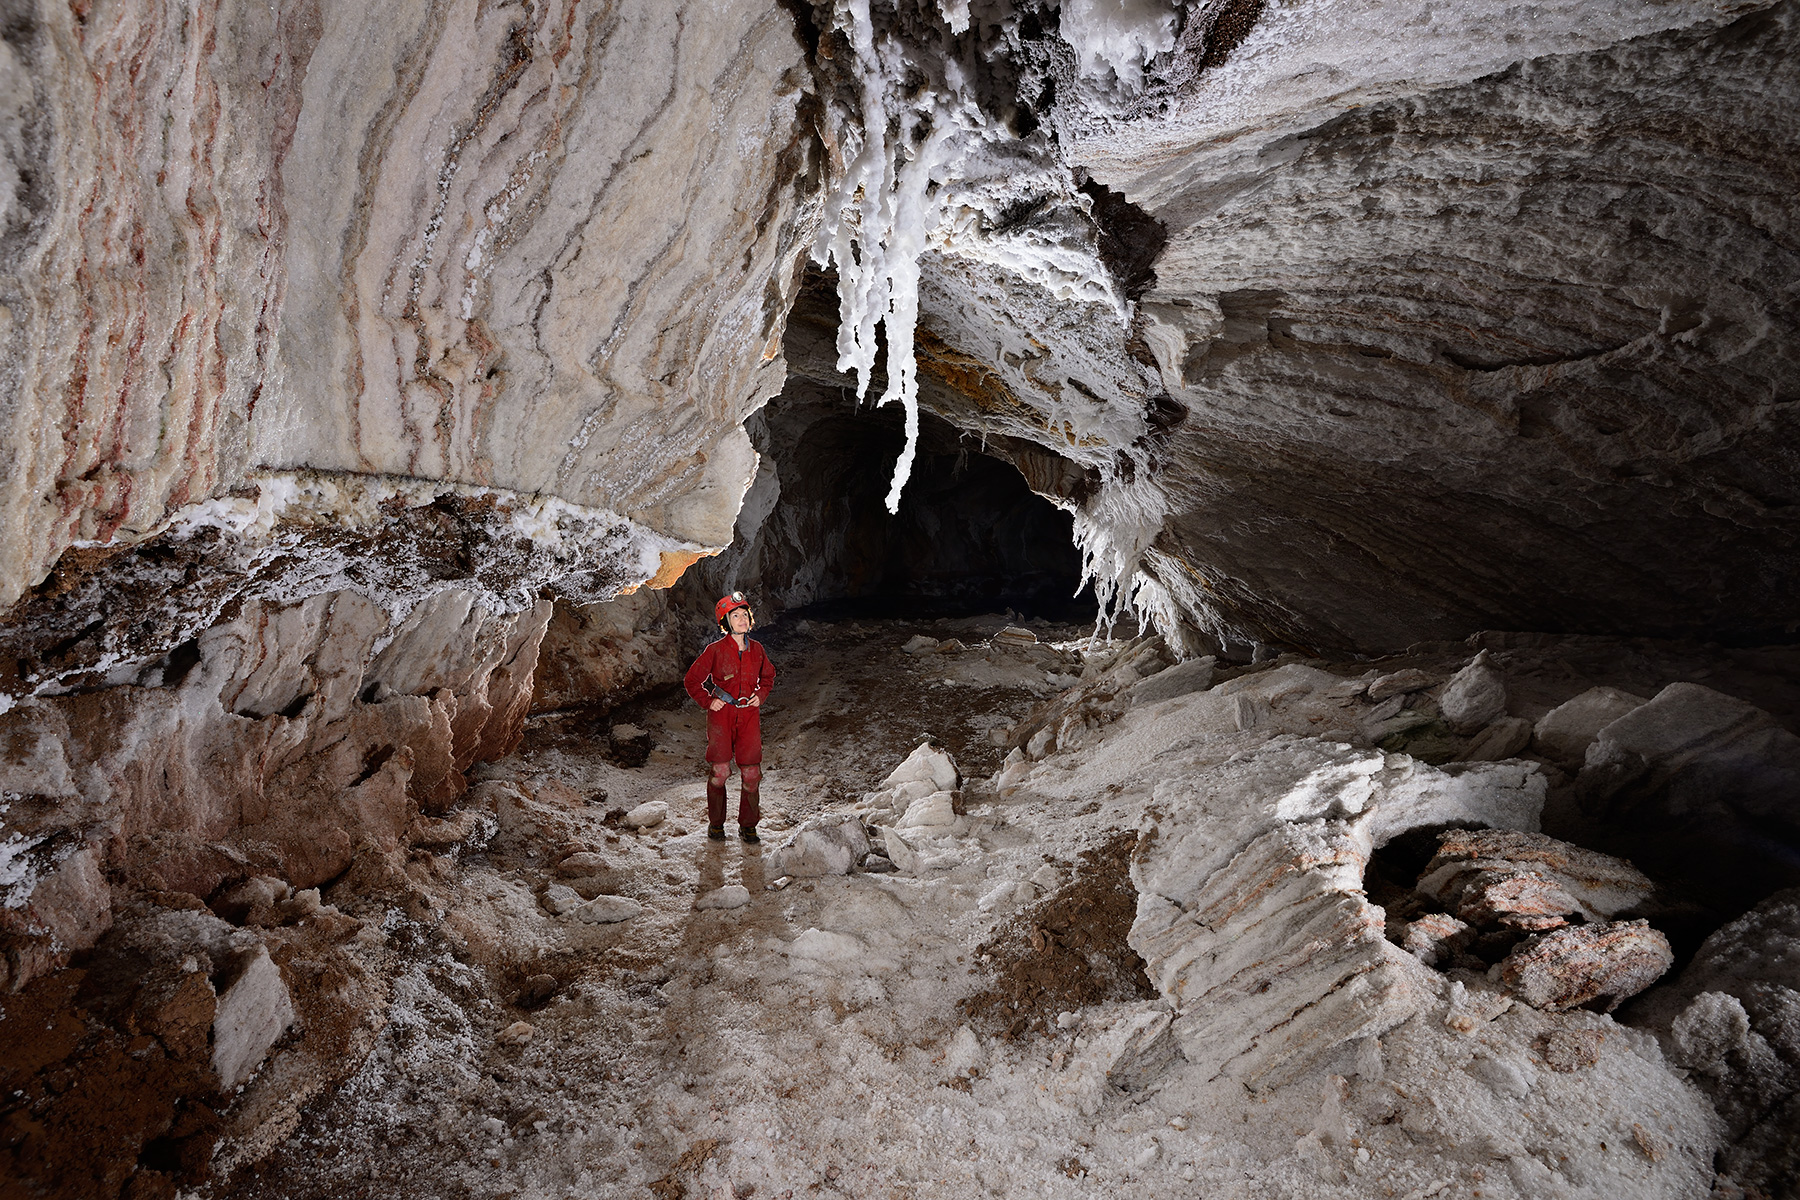 3N Cave (Iran, île de Qeshm, diapir de sel de Namakdan): spéléo dans galerie blanche avec strates de sel visibles et stalactites de sel